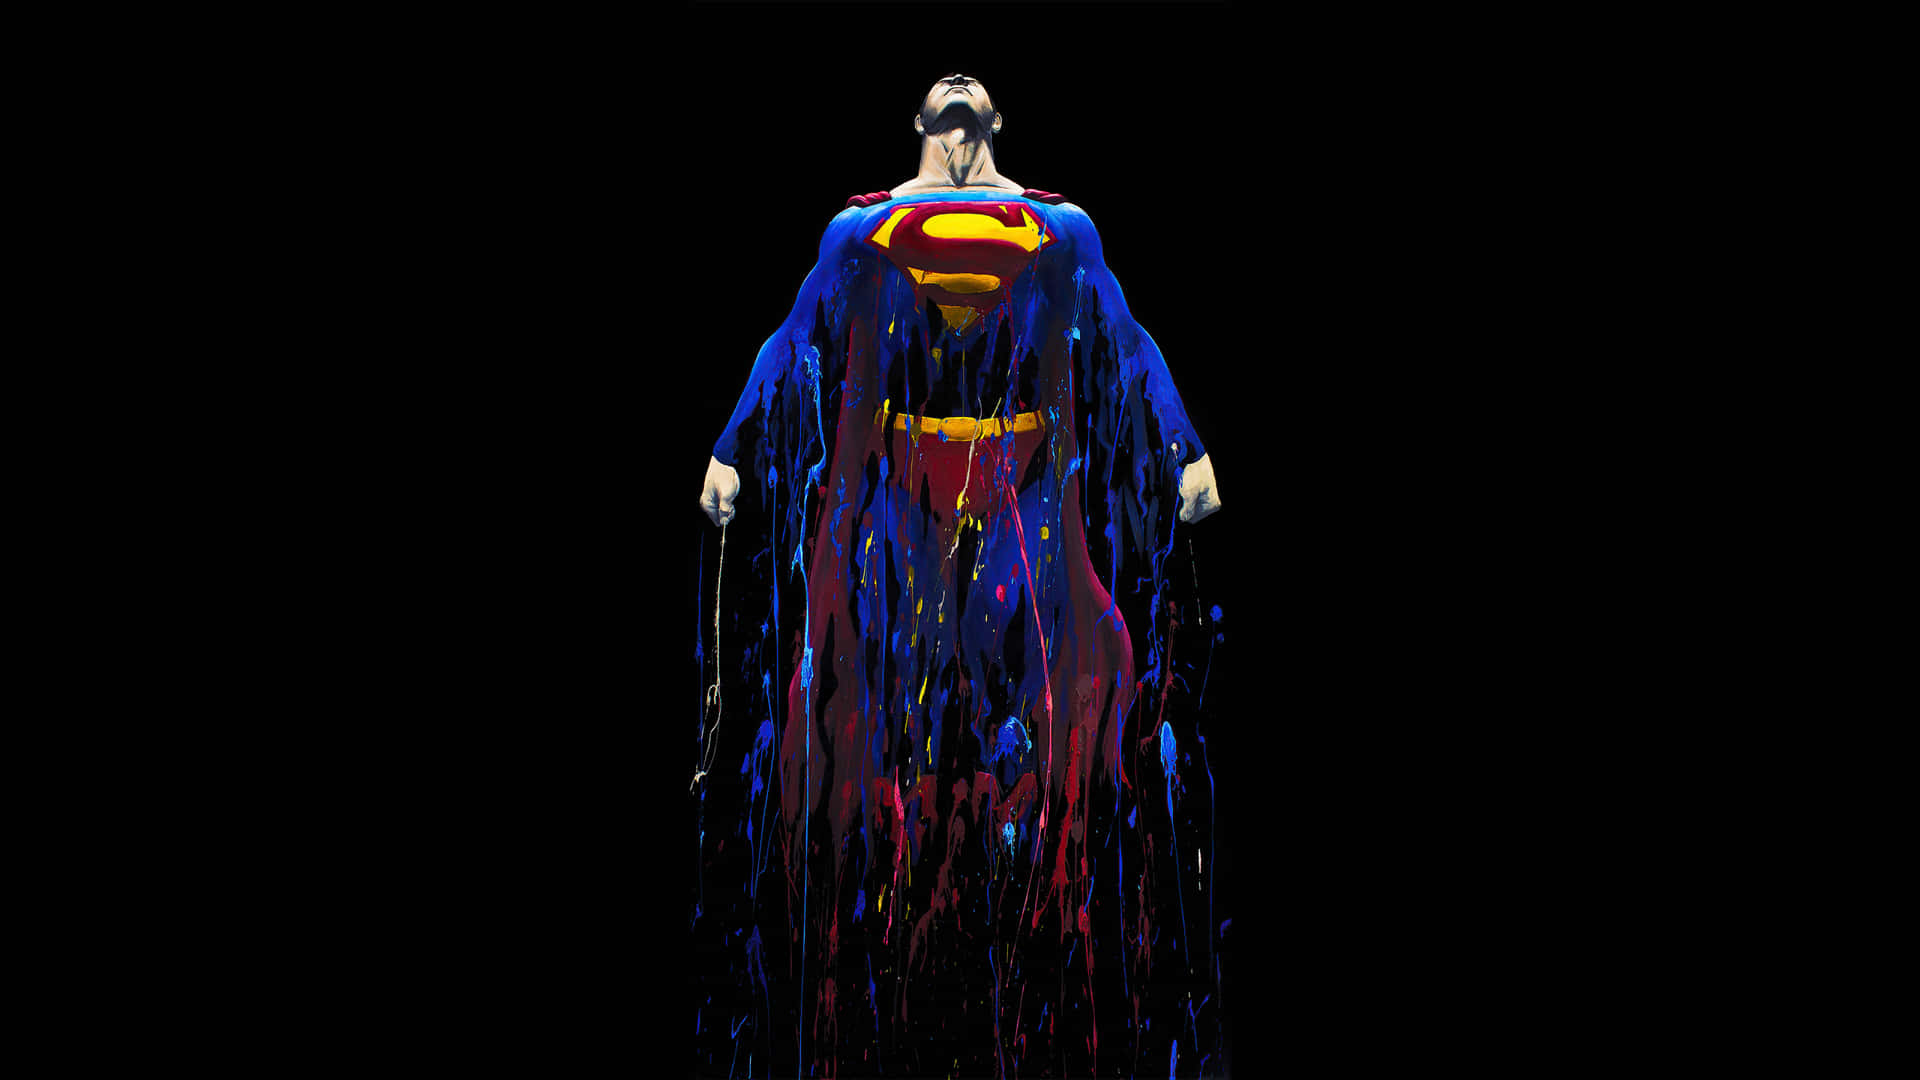 Pinturado Superman Em Fundo Amoled De 1440p.